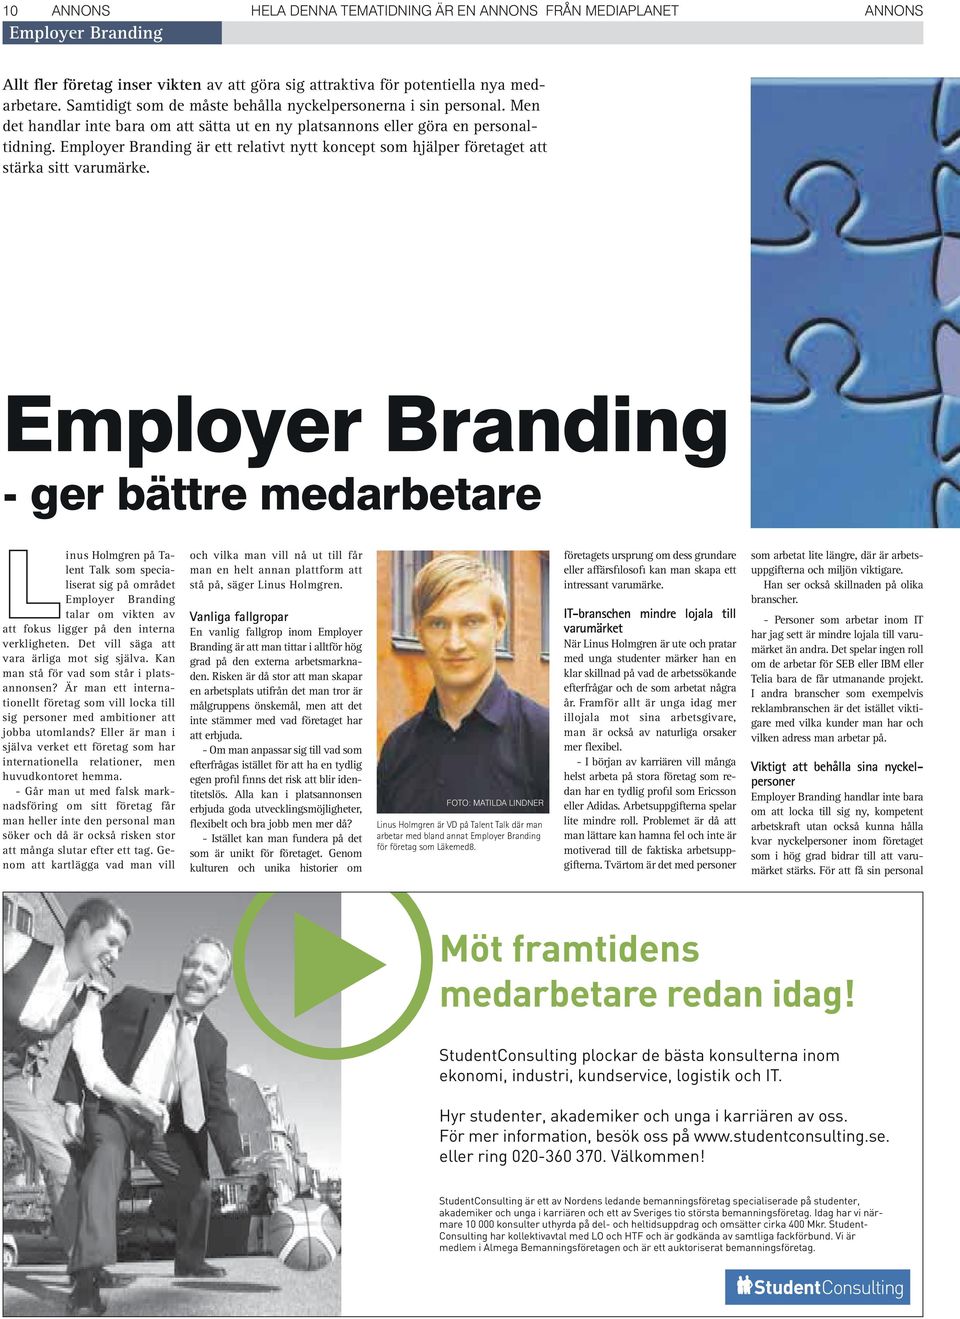 Employer Branding är ett relativt nytt koncept som hjälper företaget att stärka sitt varumärke.